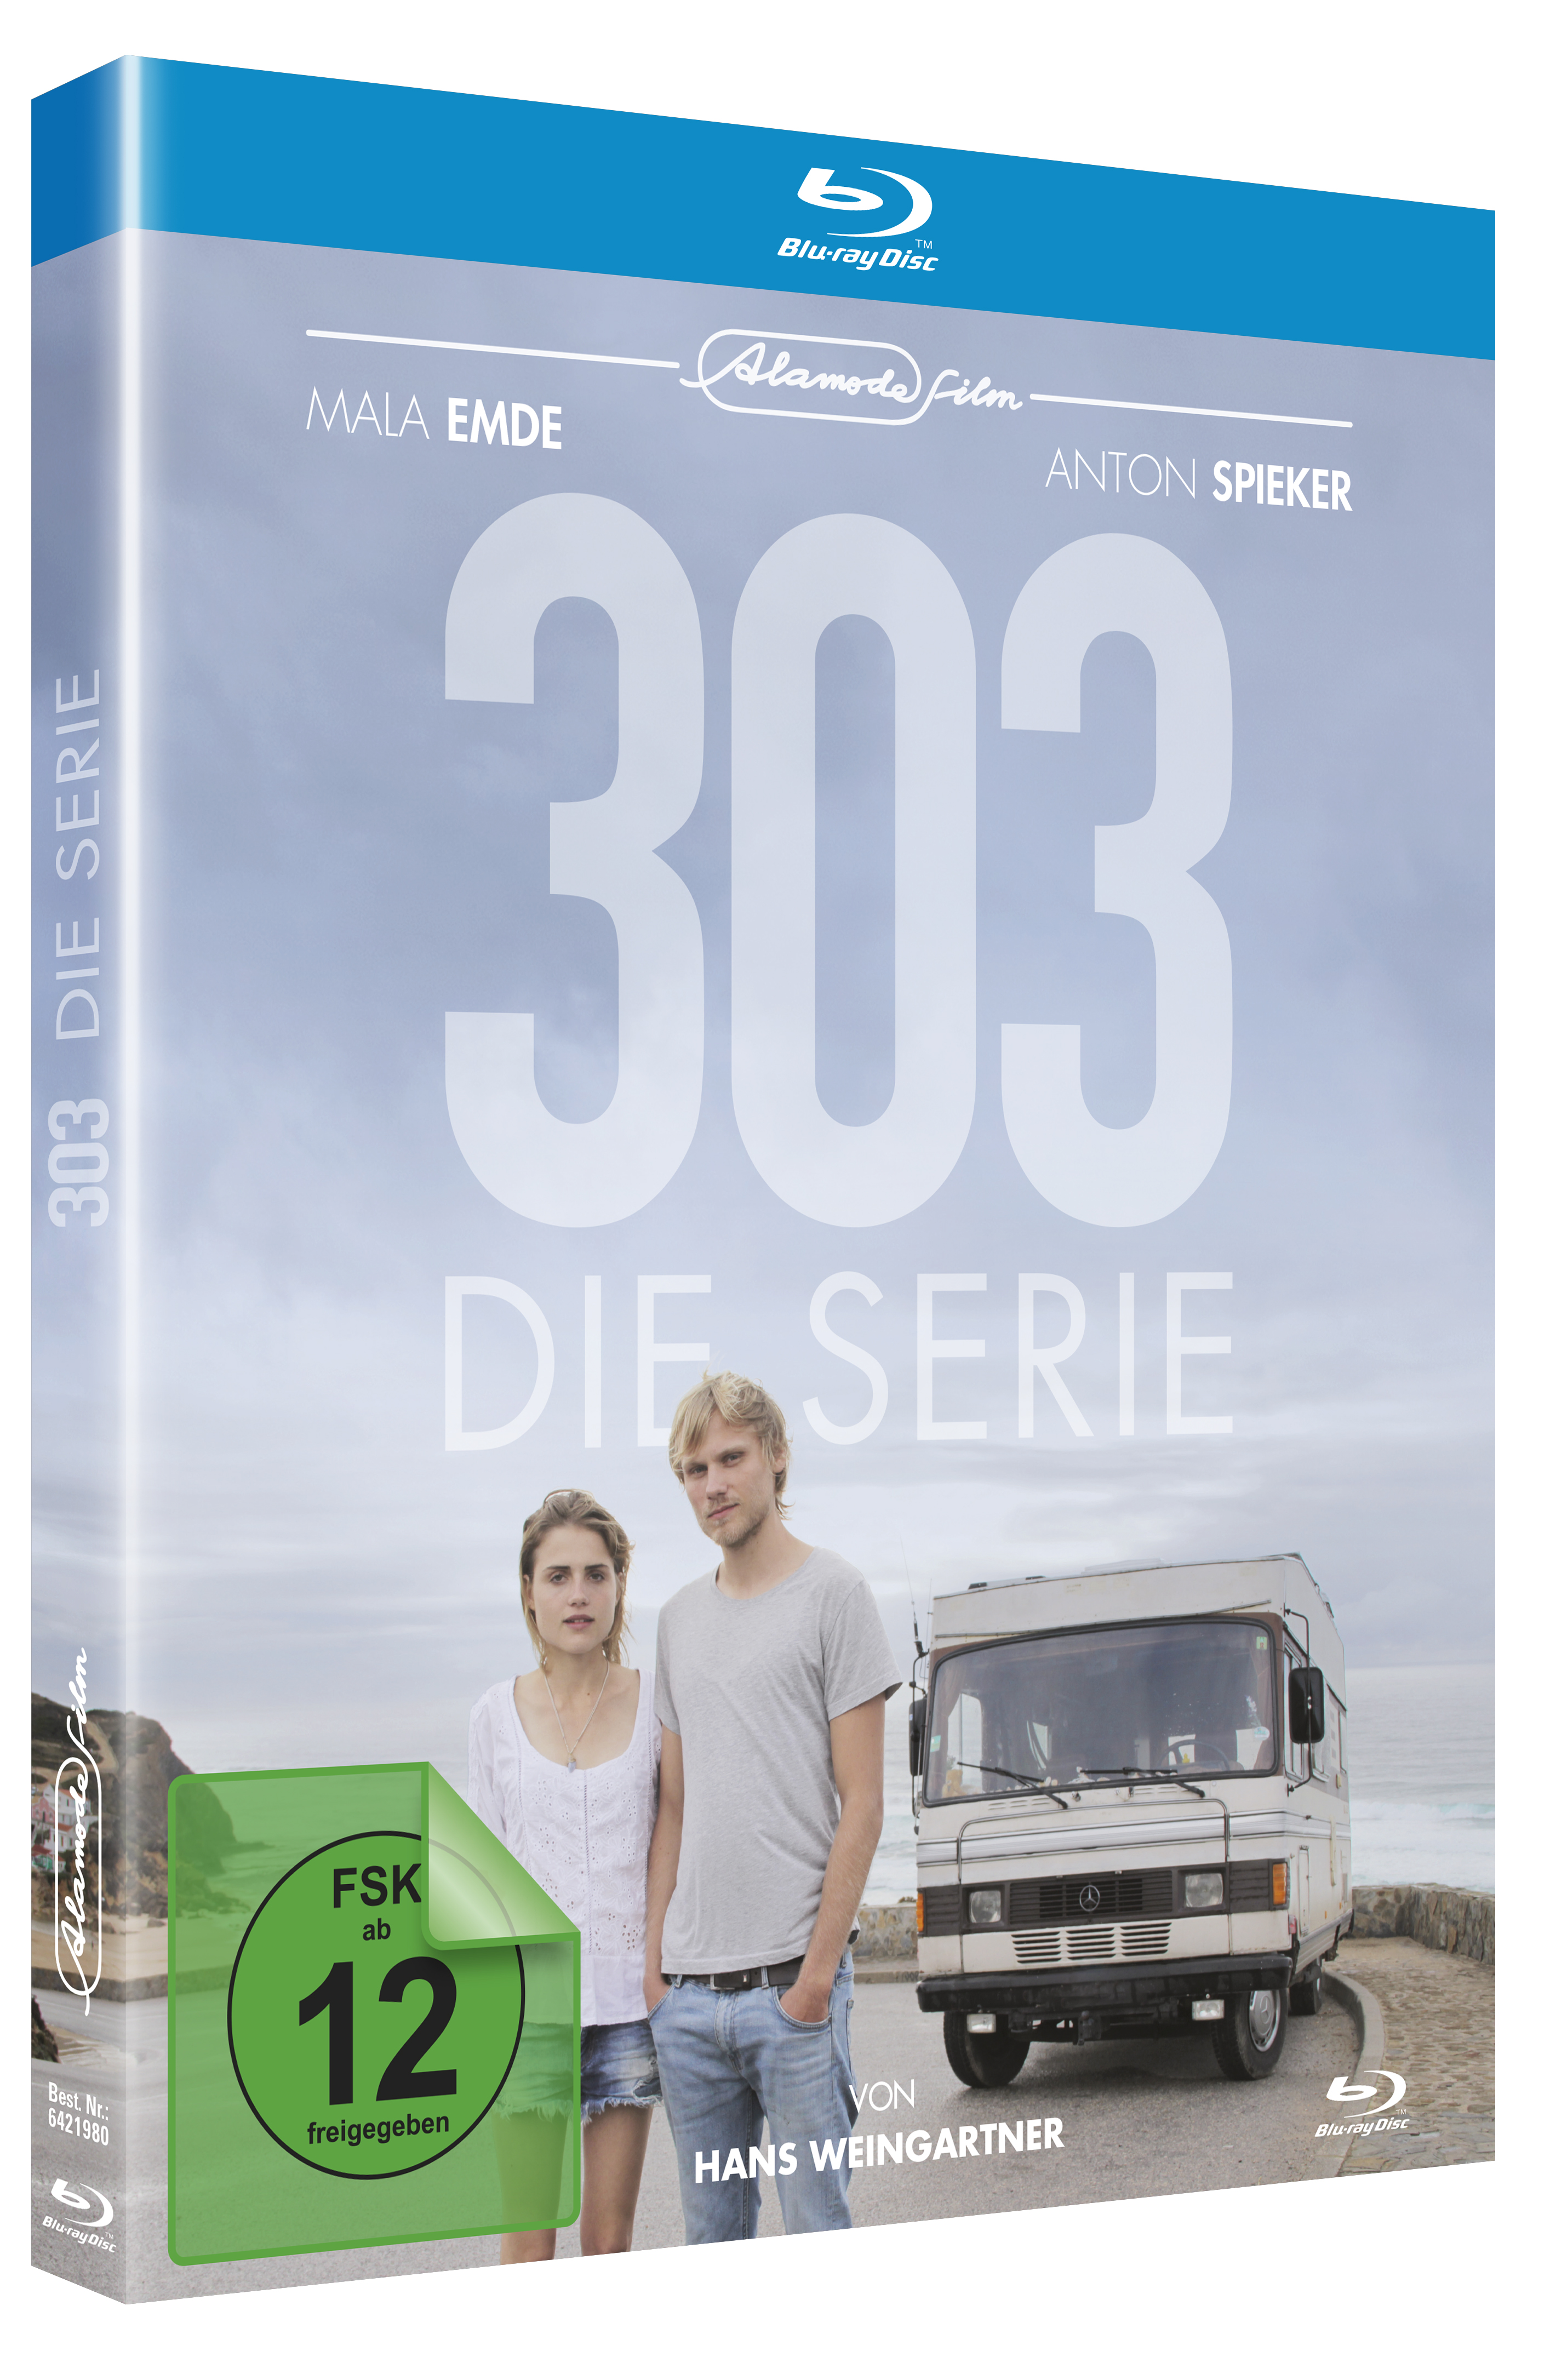 303 (Die Serie)